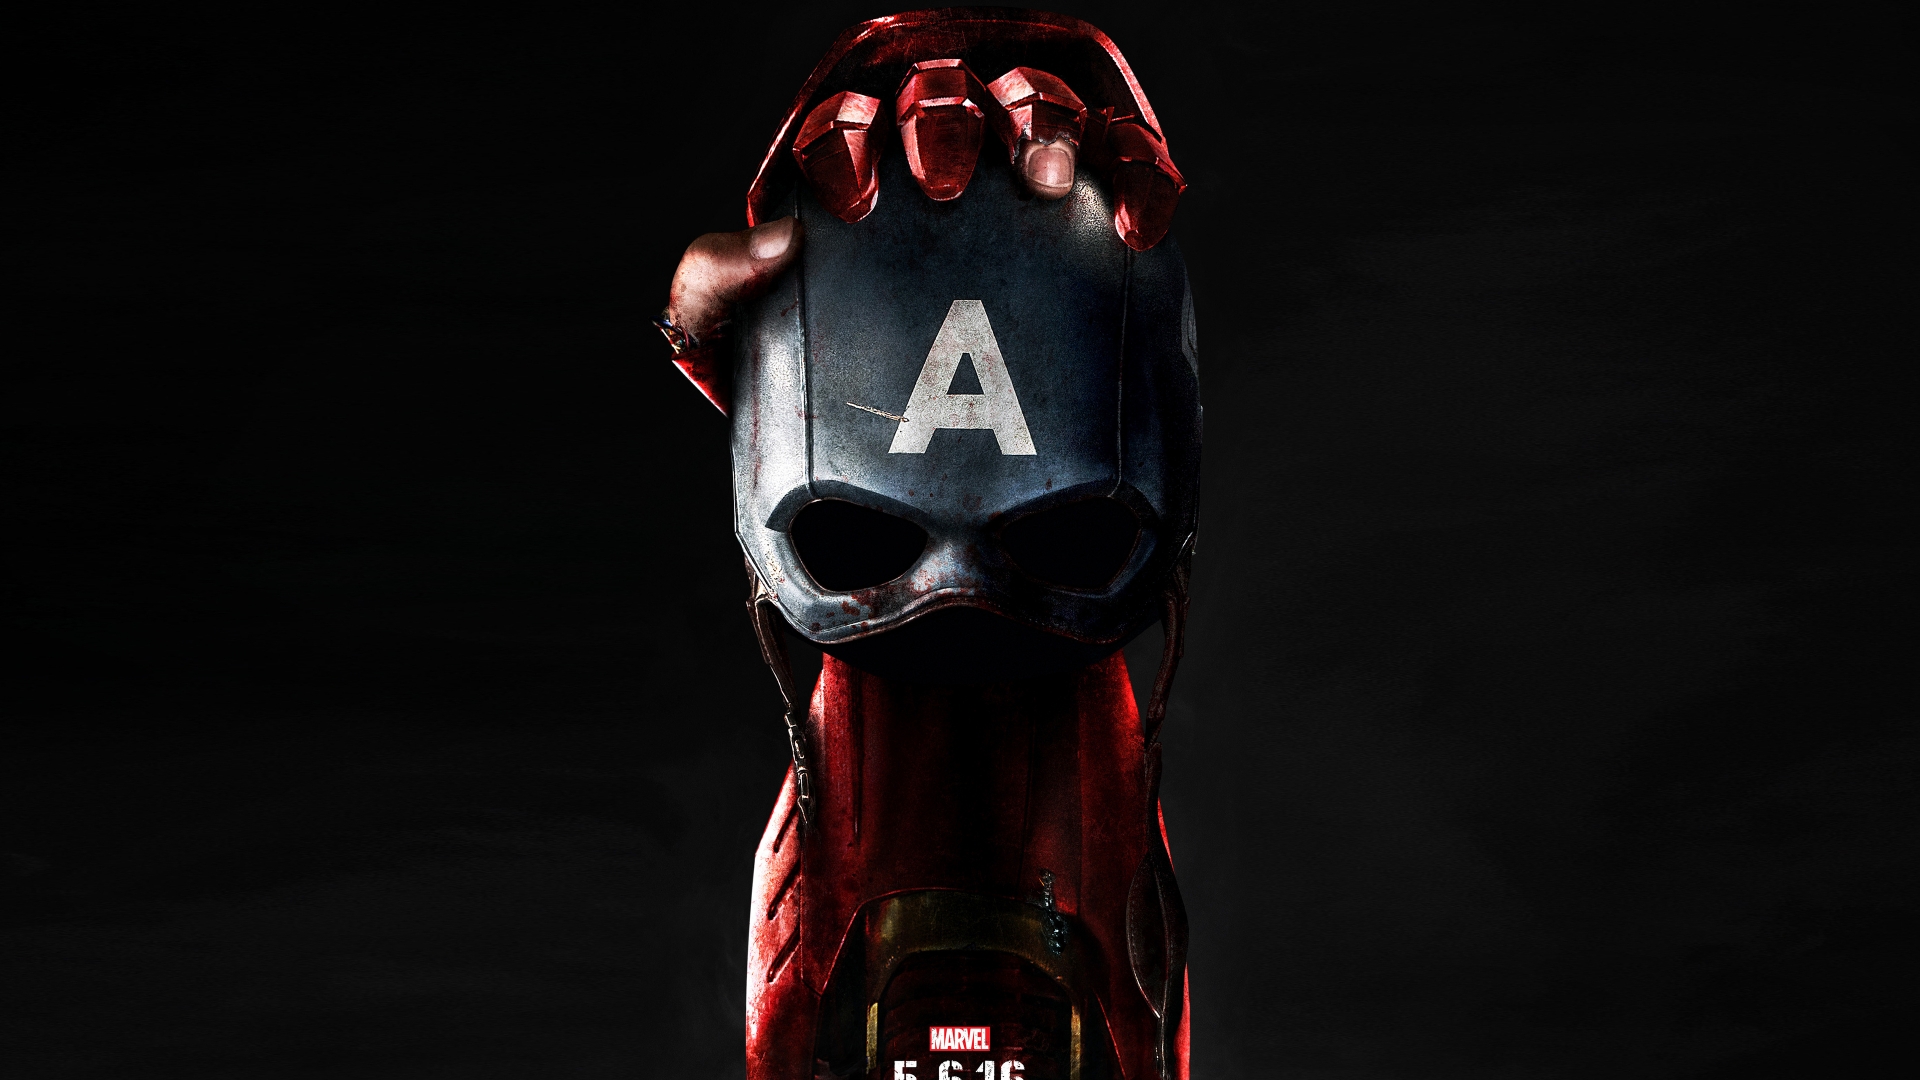 Captain America Civil War Poster 2016 for 1920 x 1080 HDTV 1080p resolution